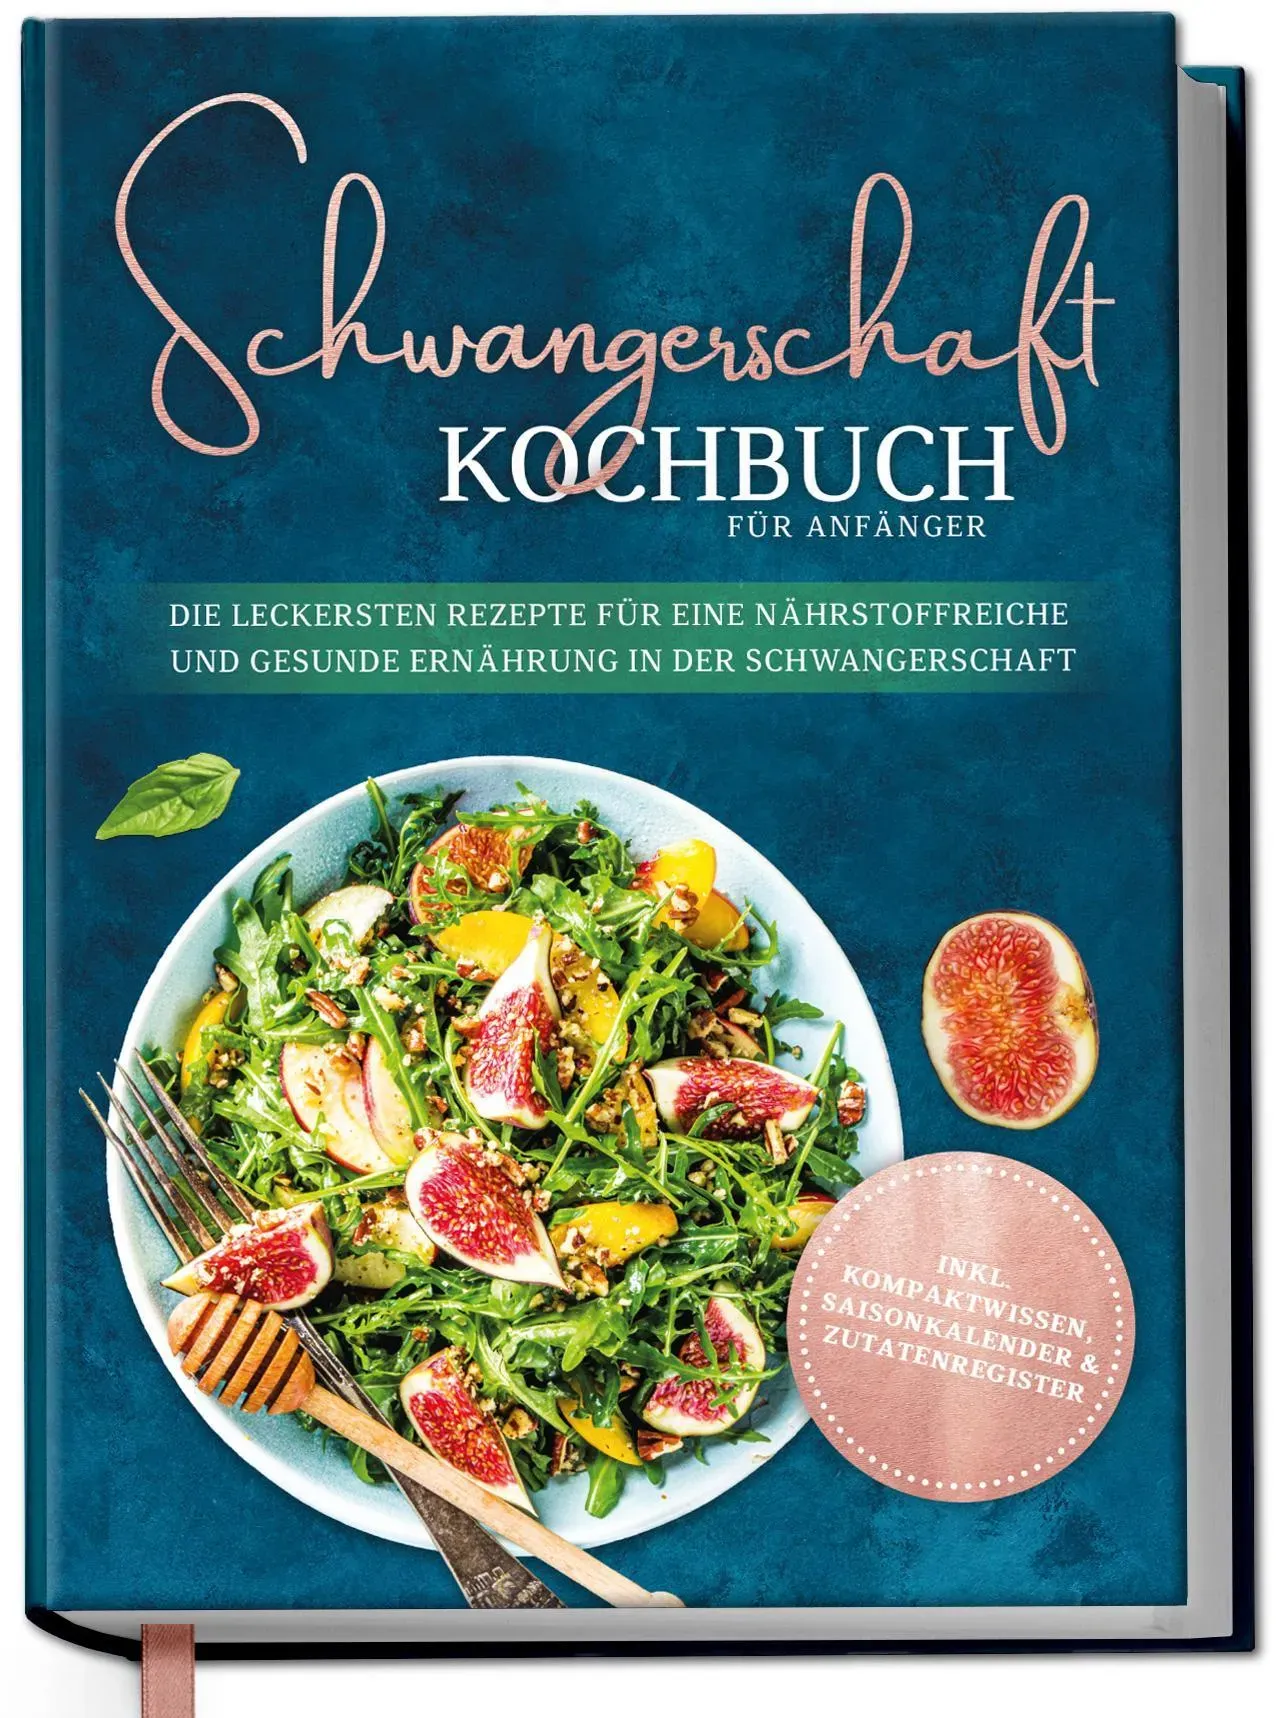 Schwangerschaft Kochbuch Für Anfänger: Die Leckersten Rezepte Für Eine Nährstoffreiche Und Gesunde Ernährung In Der Schwangerschaft - Ann-Kristin Scha